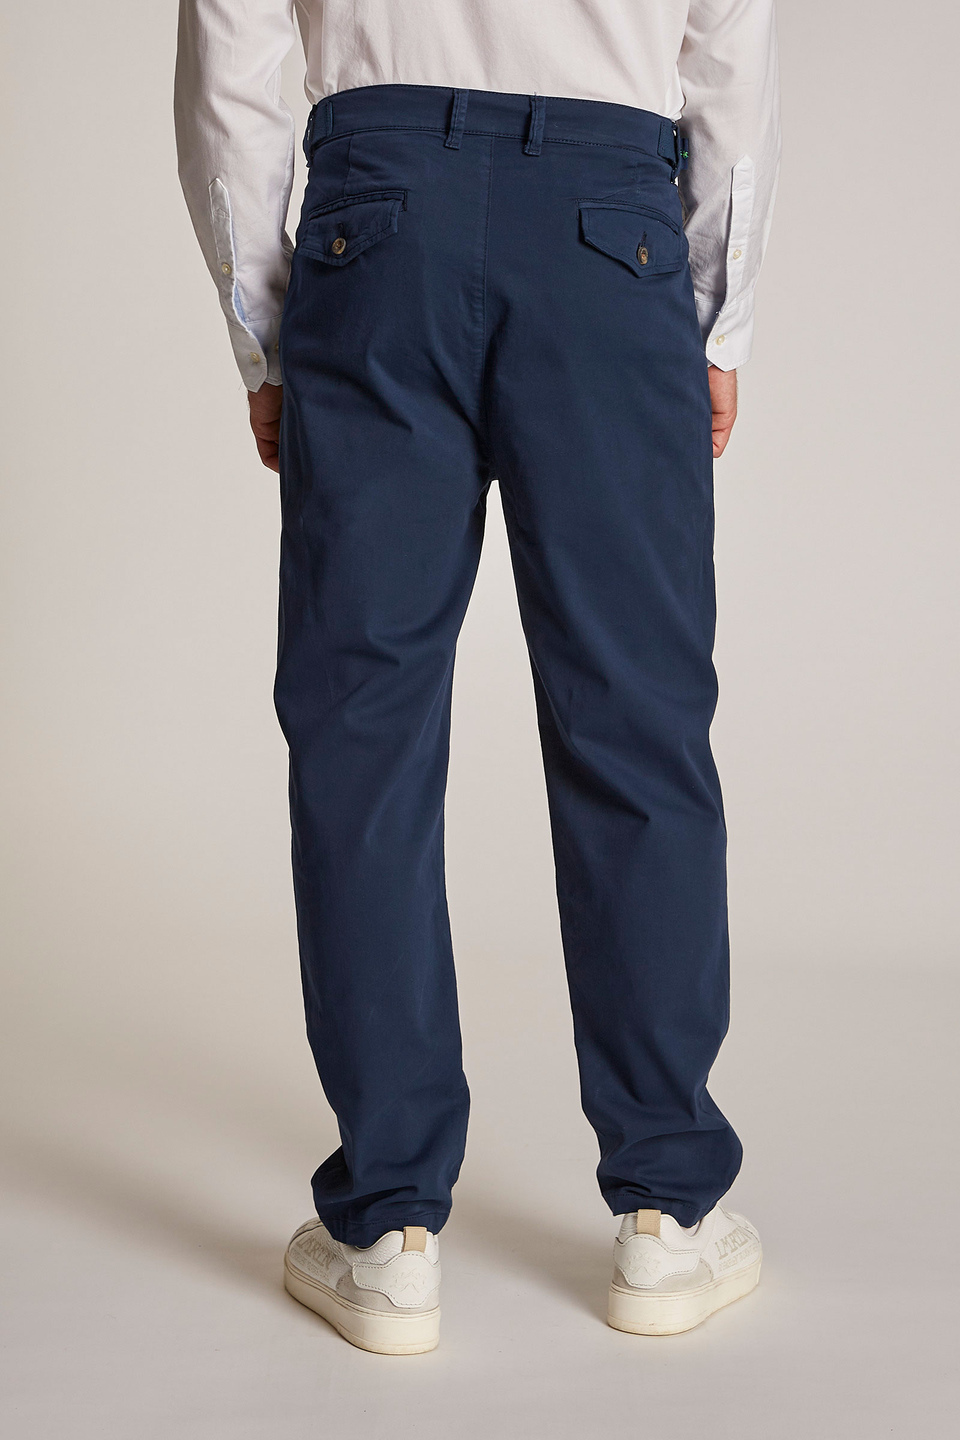 Pantalon chino homme coupe classique | La Martina - Official Online Shop